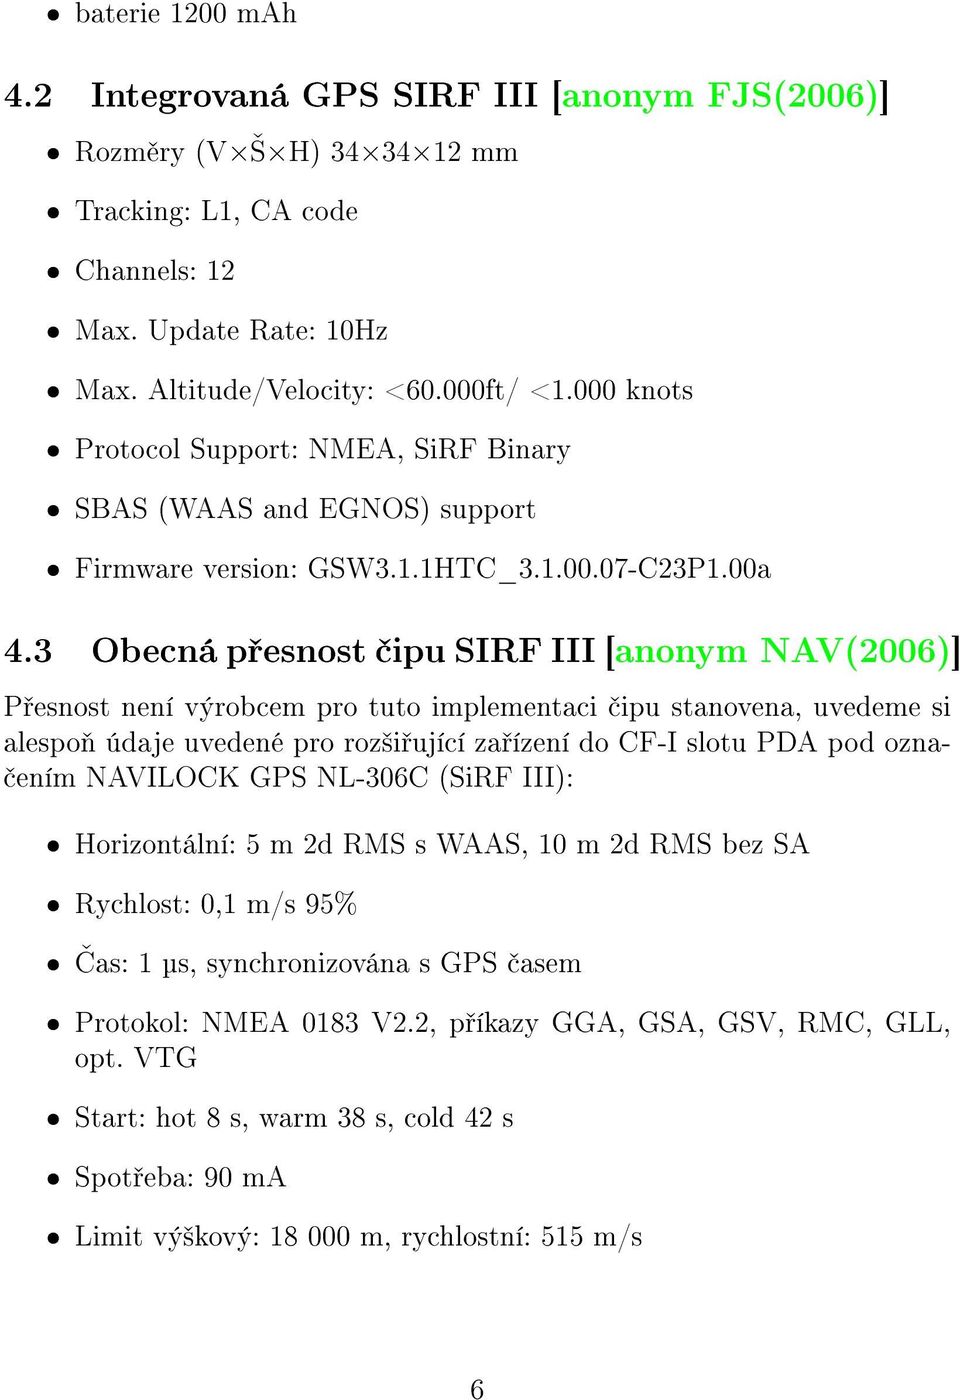 3 Obecná p esnost ipu SIRF III [anonym NAV(2006)] P esnost není výrobcem pro tuto implementaci ipu stanovena, uvedeme si alespo údaje uvedené pro roz²i ující za ízení do CF-I slotu PDA pod ozna- ením